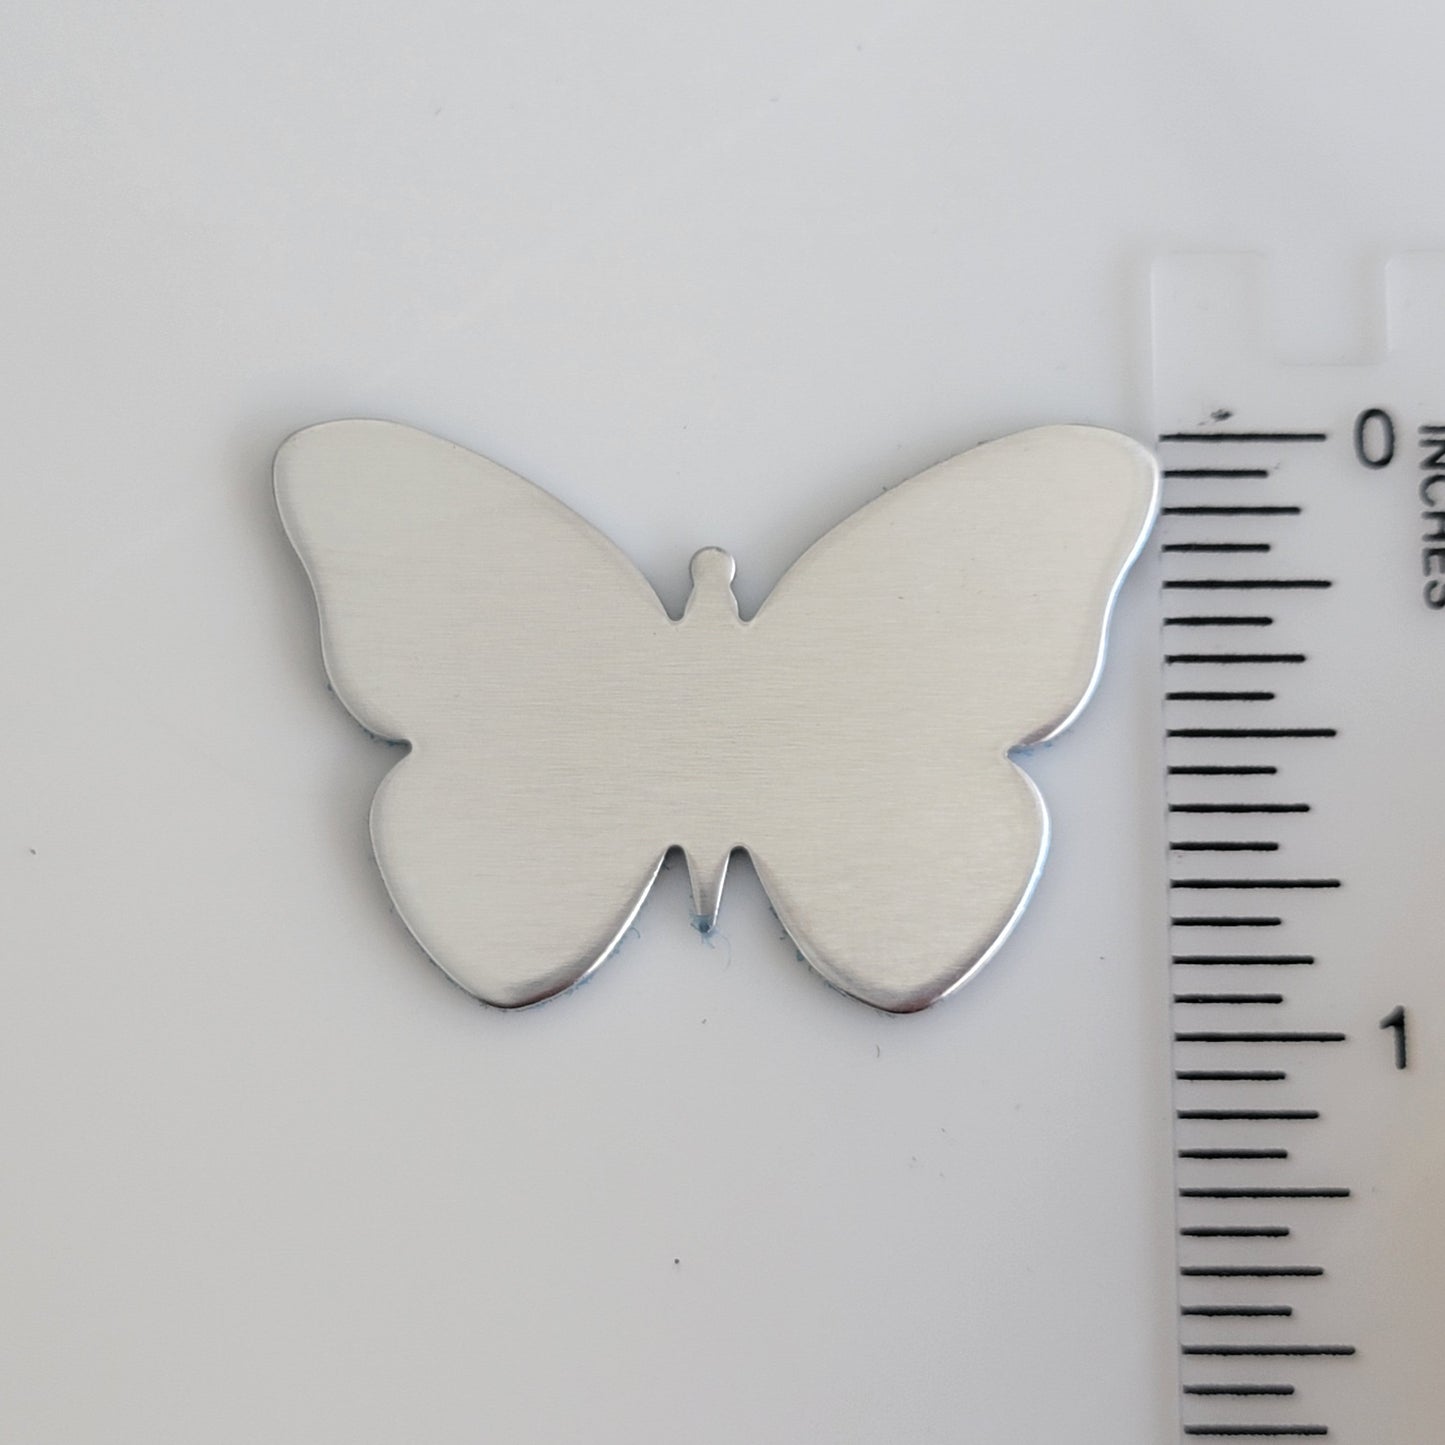 1" x 1 1/2" Butterfly - 14g ALUMINUM